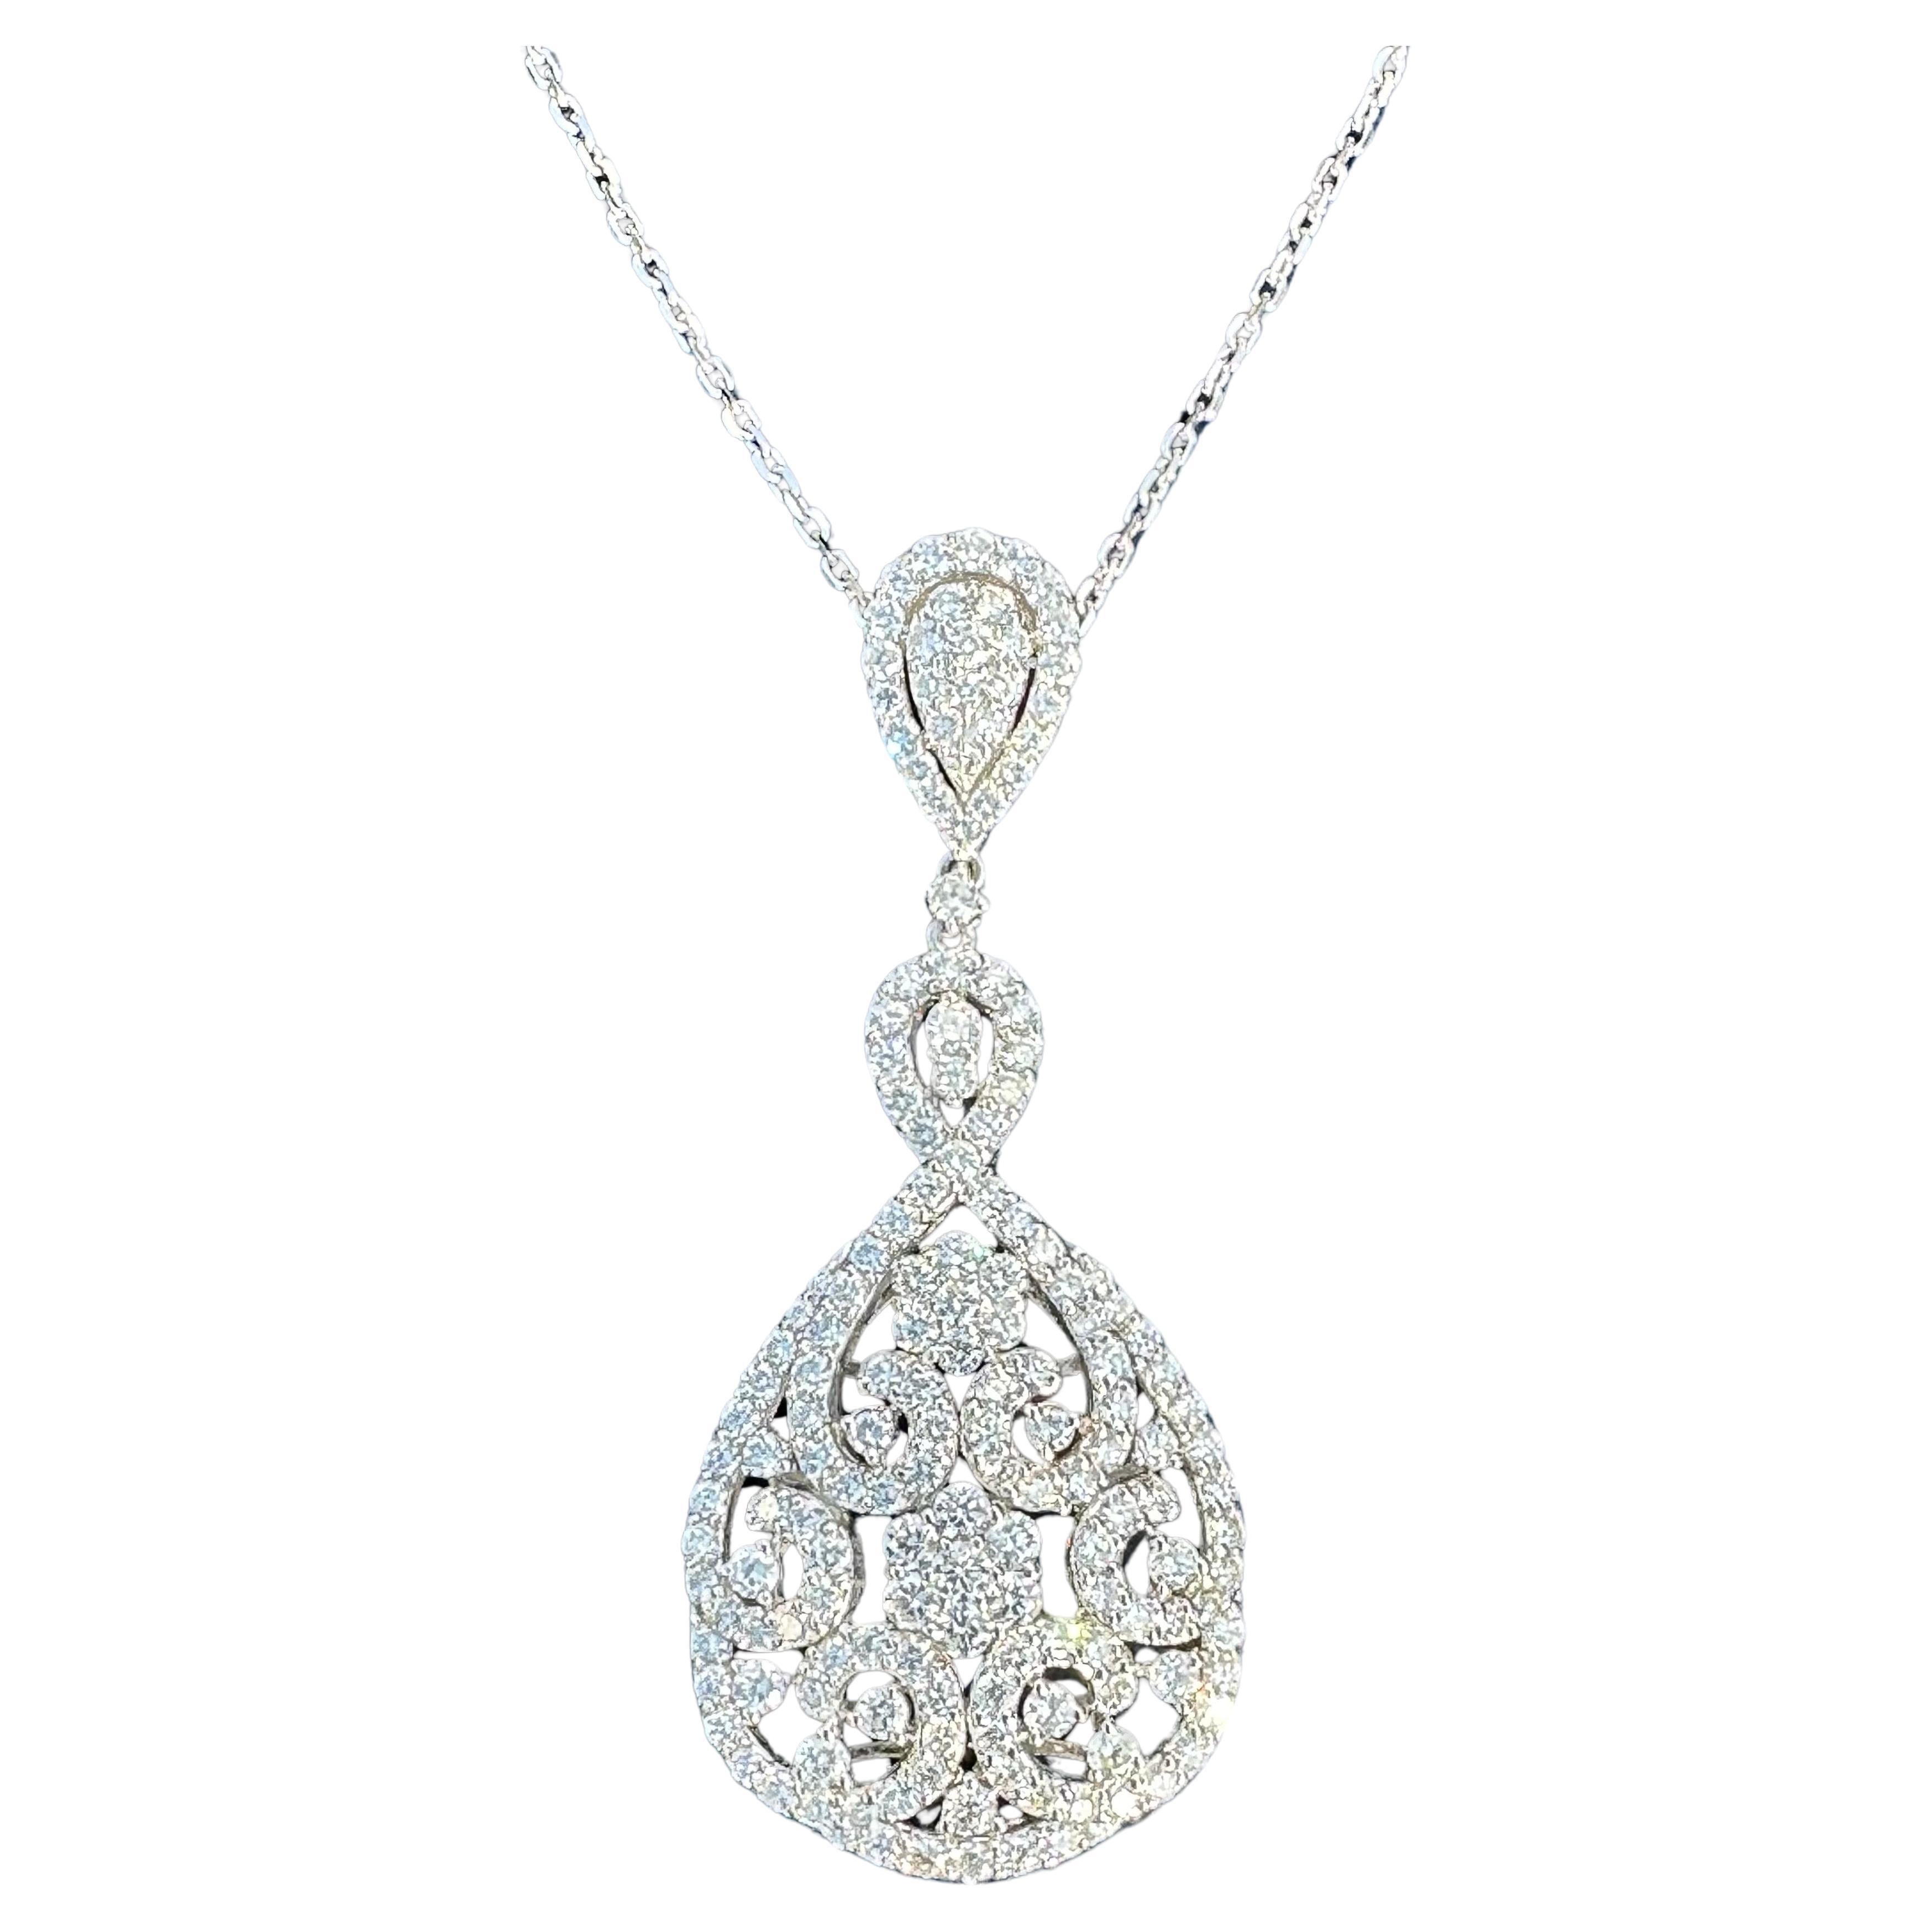 Magnifique pendentif en forme de poire en or blanc 18 carats et diamants de 8,5 carats sur chaîne